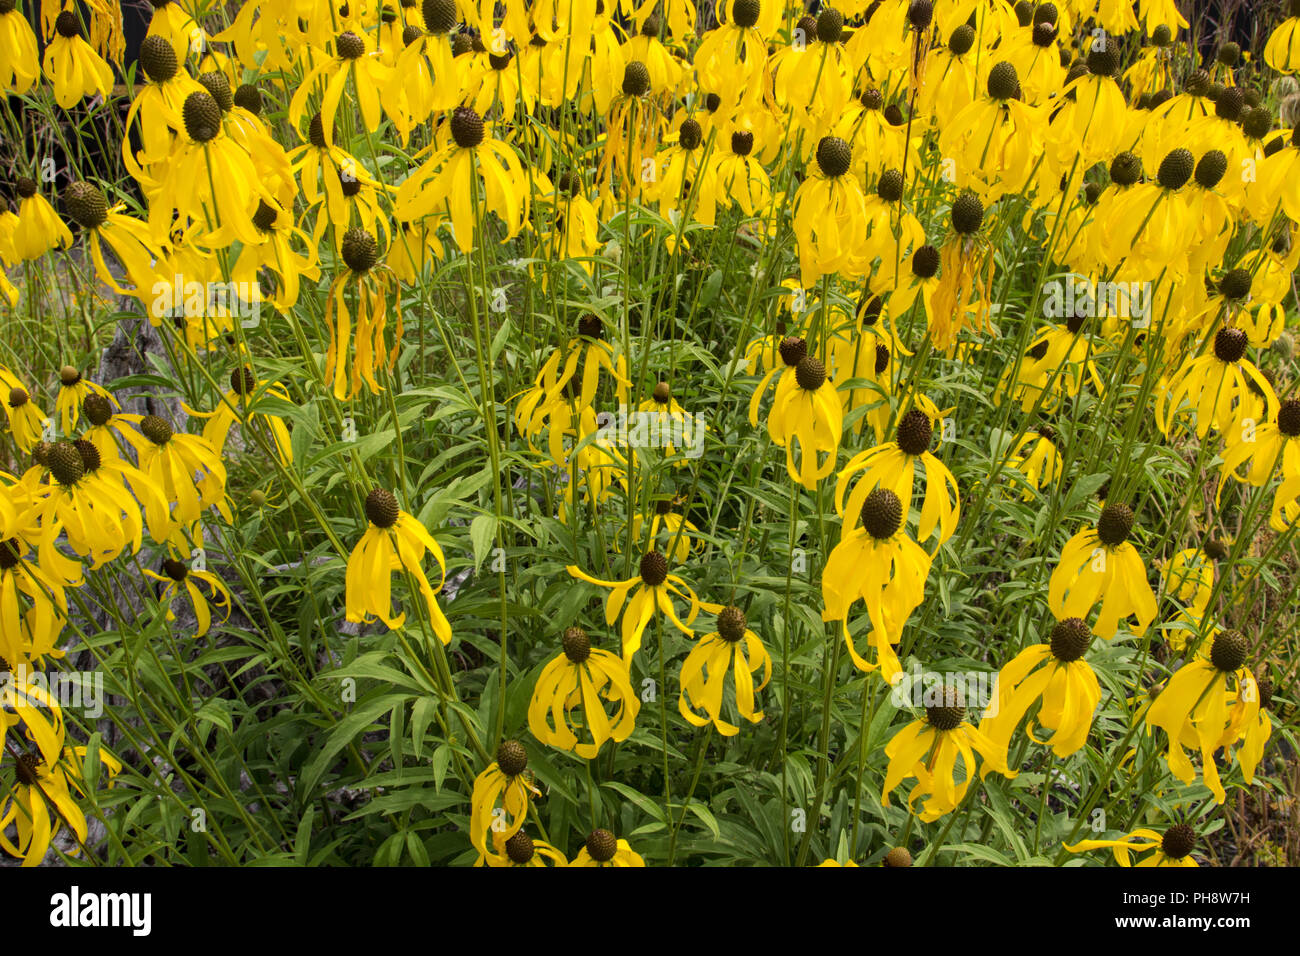 Black Eyed Susan Flower Background. Gruppe von Black Eyed Susans Stauden im Sommer blühender Garten. Stockfoto